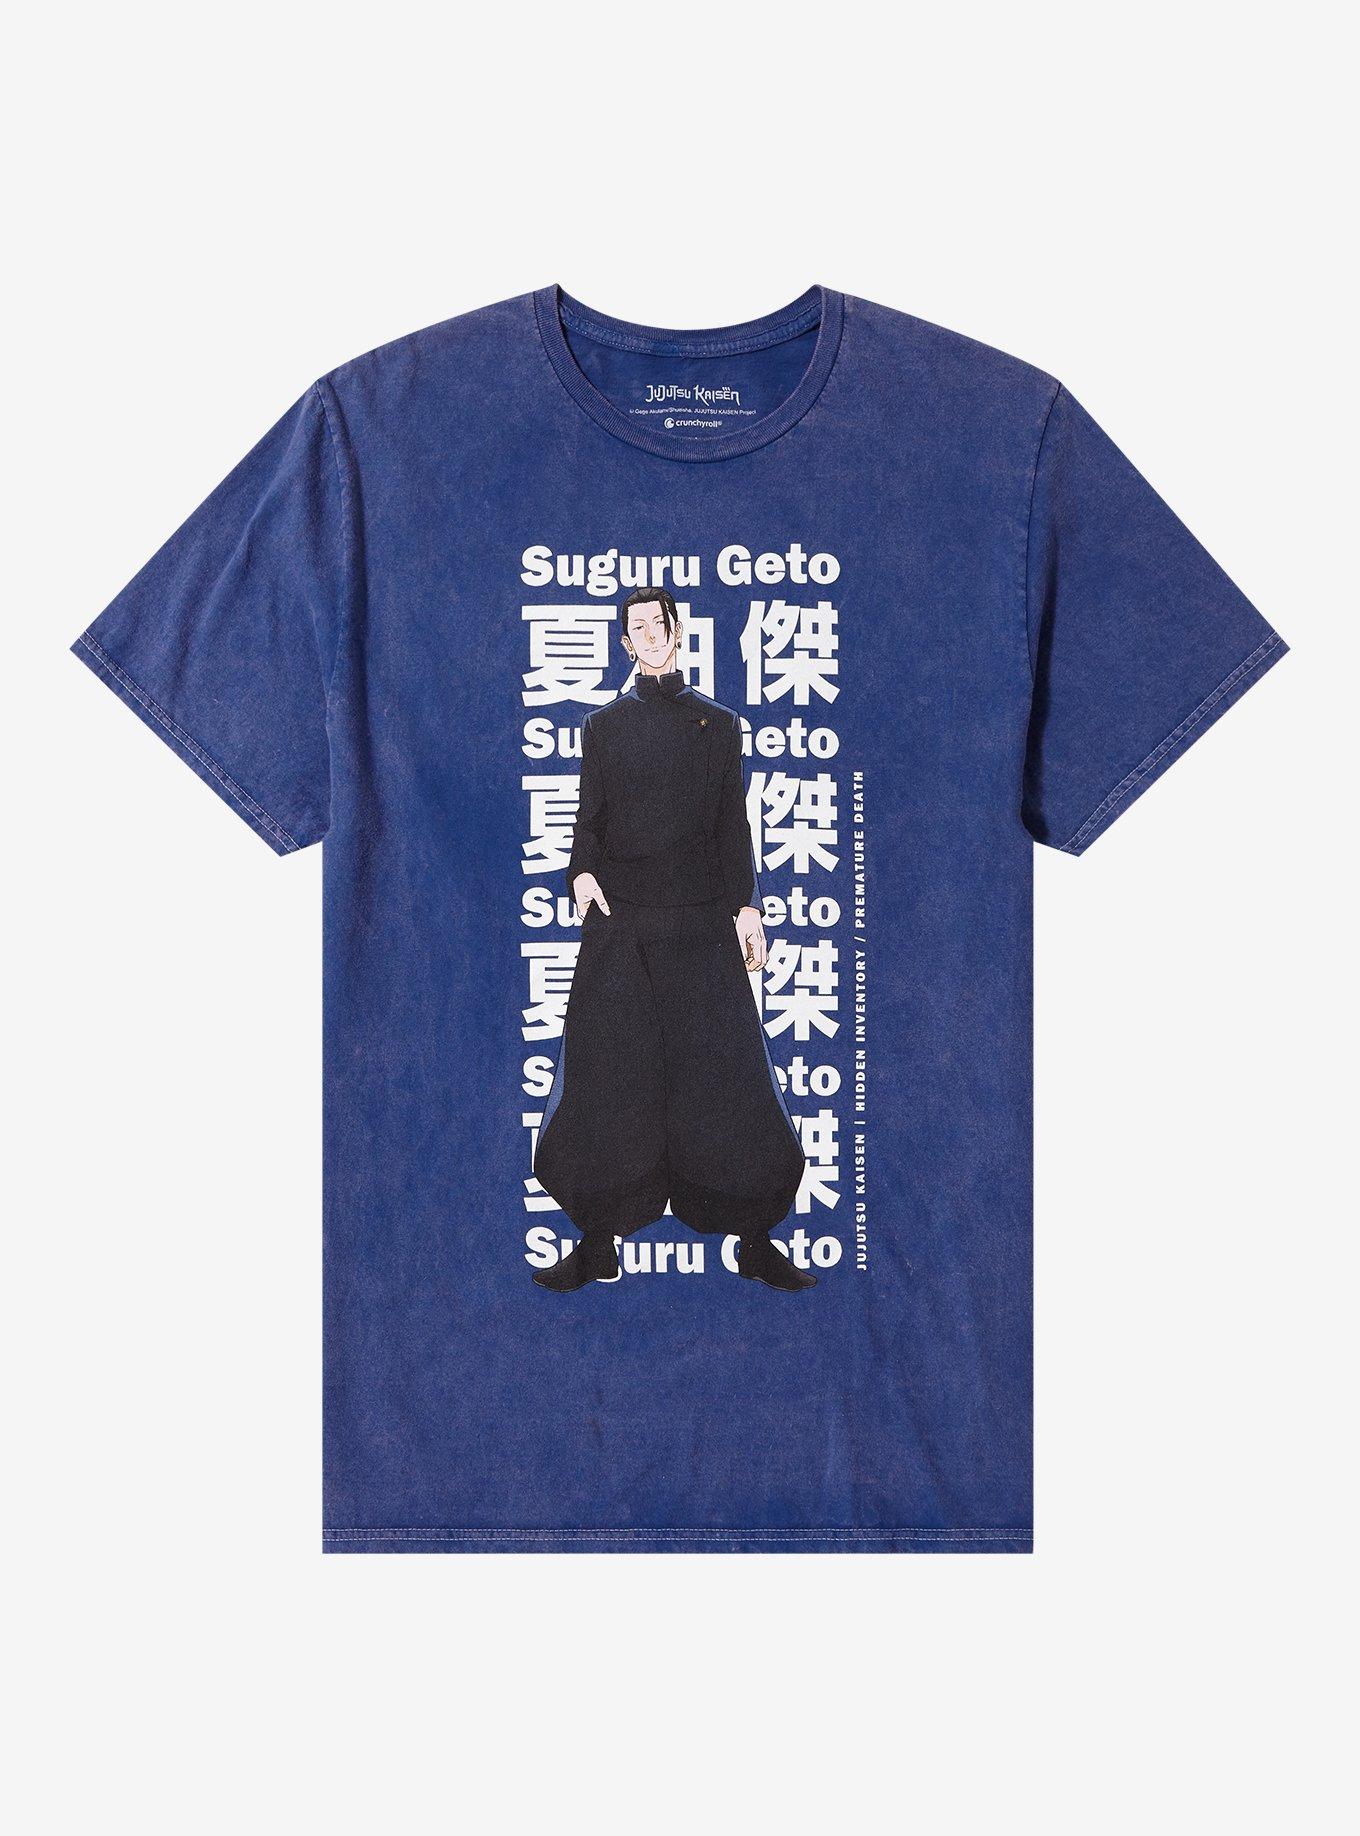 Jujutsu Kaisen Geto Season 2 Tie-Dye T-Shirt | Hot Topic